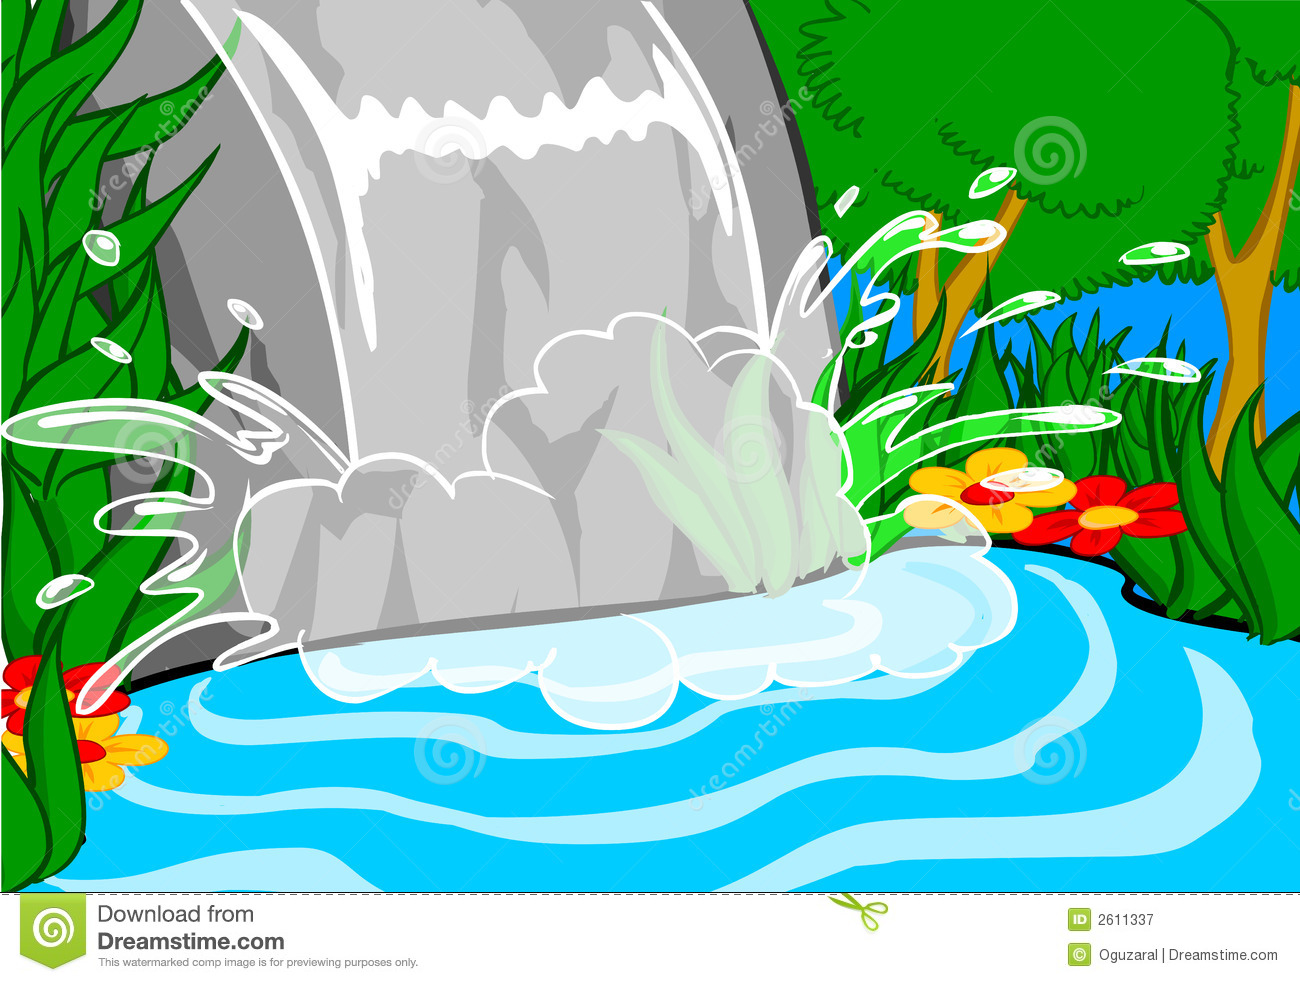 waterfall: Vector illustratio